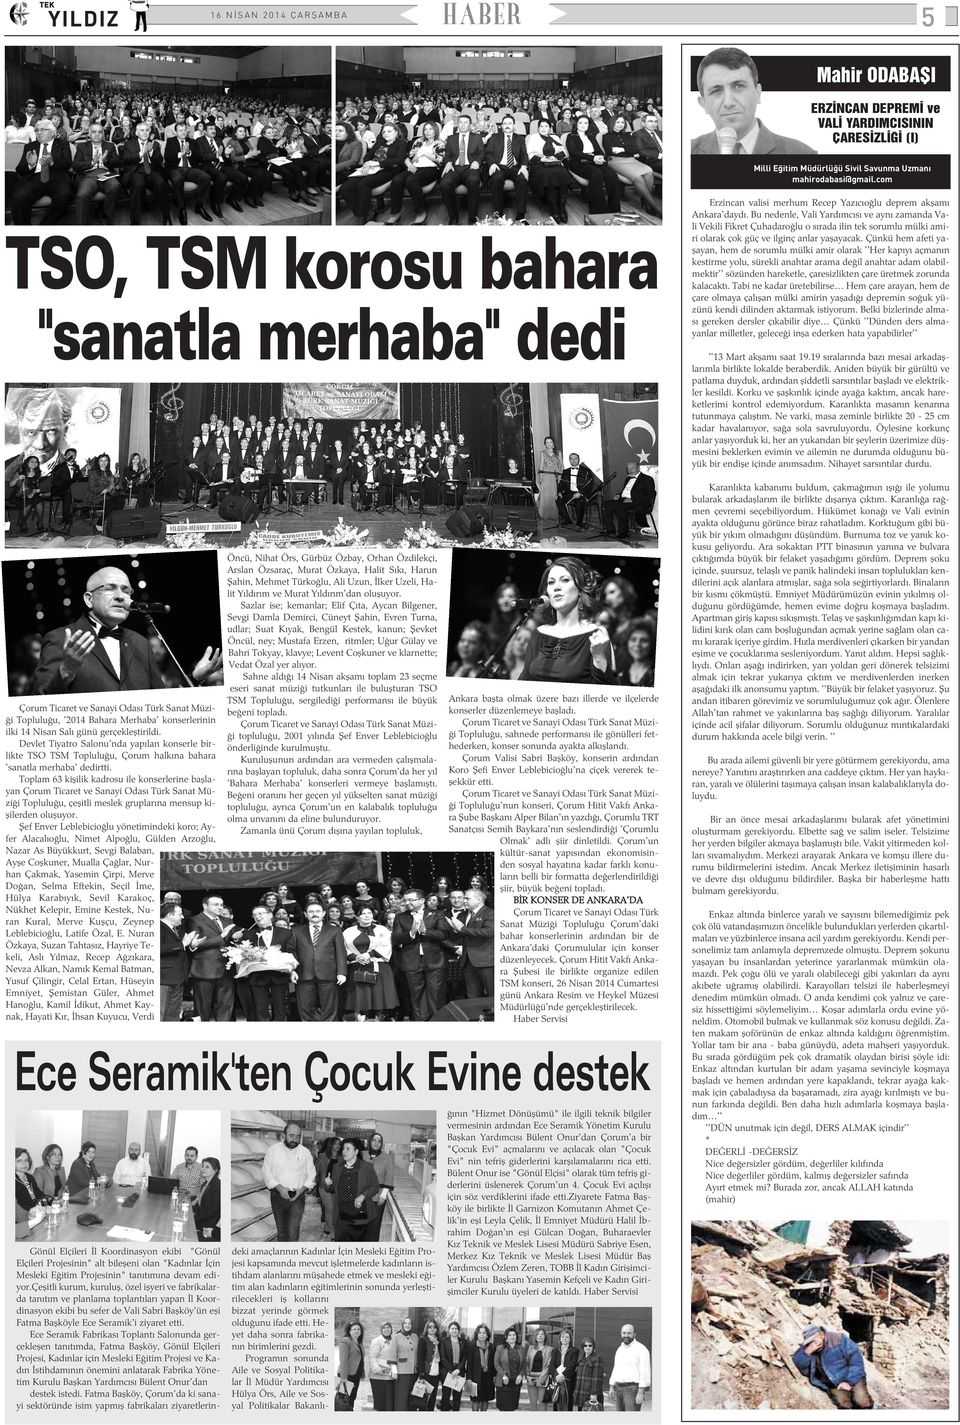 Devlet Tiyatro Salonu'nda yapýlan konserle birlikte TSO TSM Topluluðu, Çorum halkýna bahara 'sanatla merhaba' dedirtti.